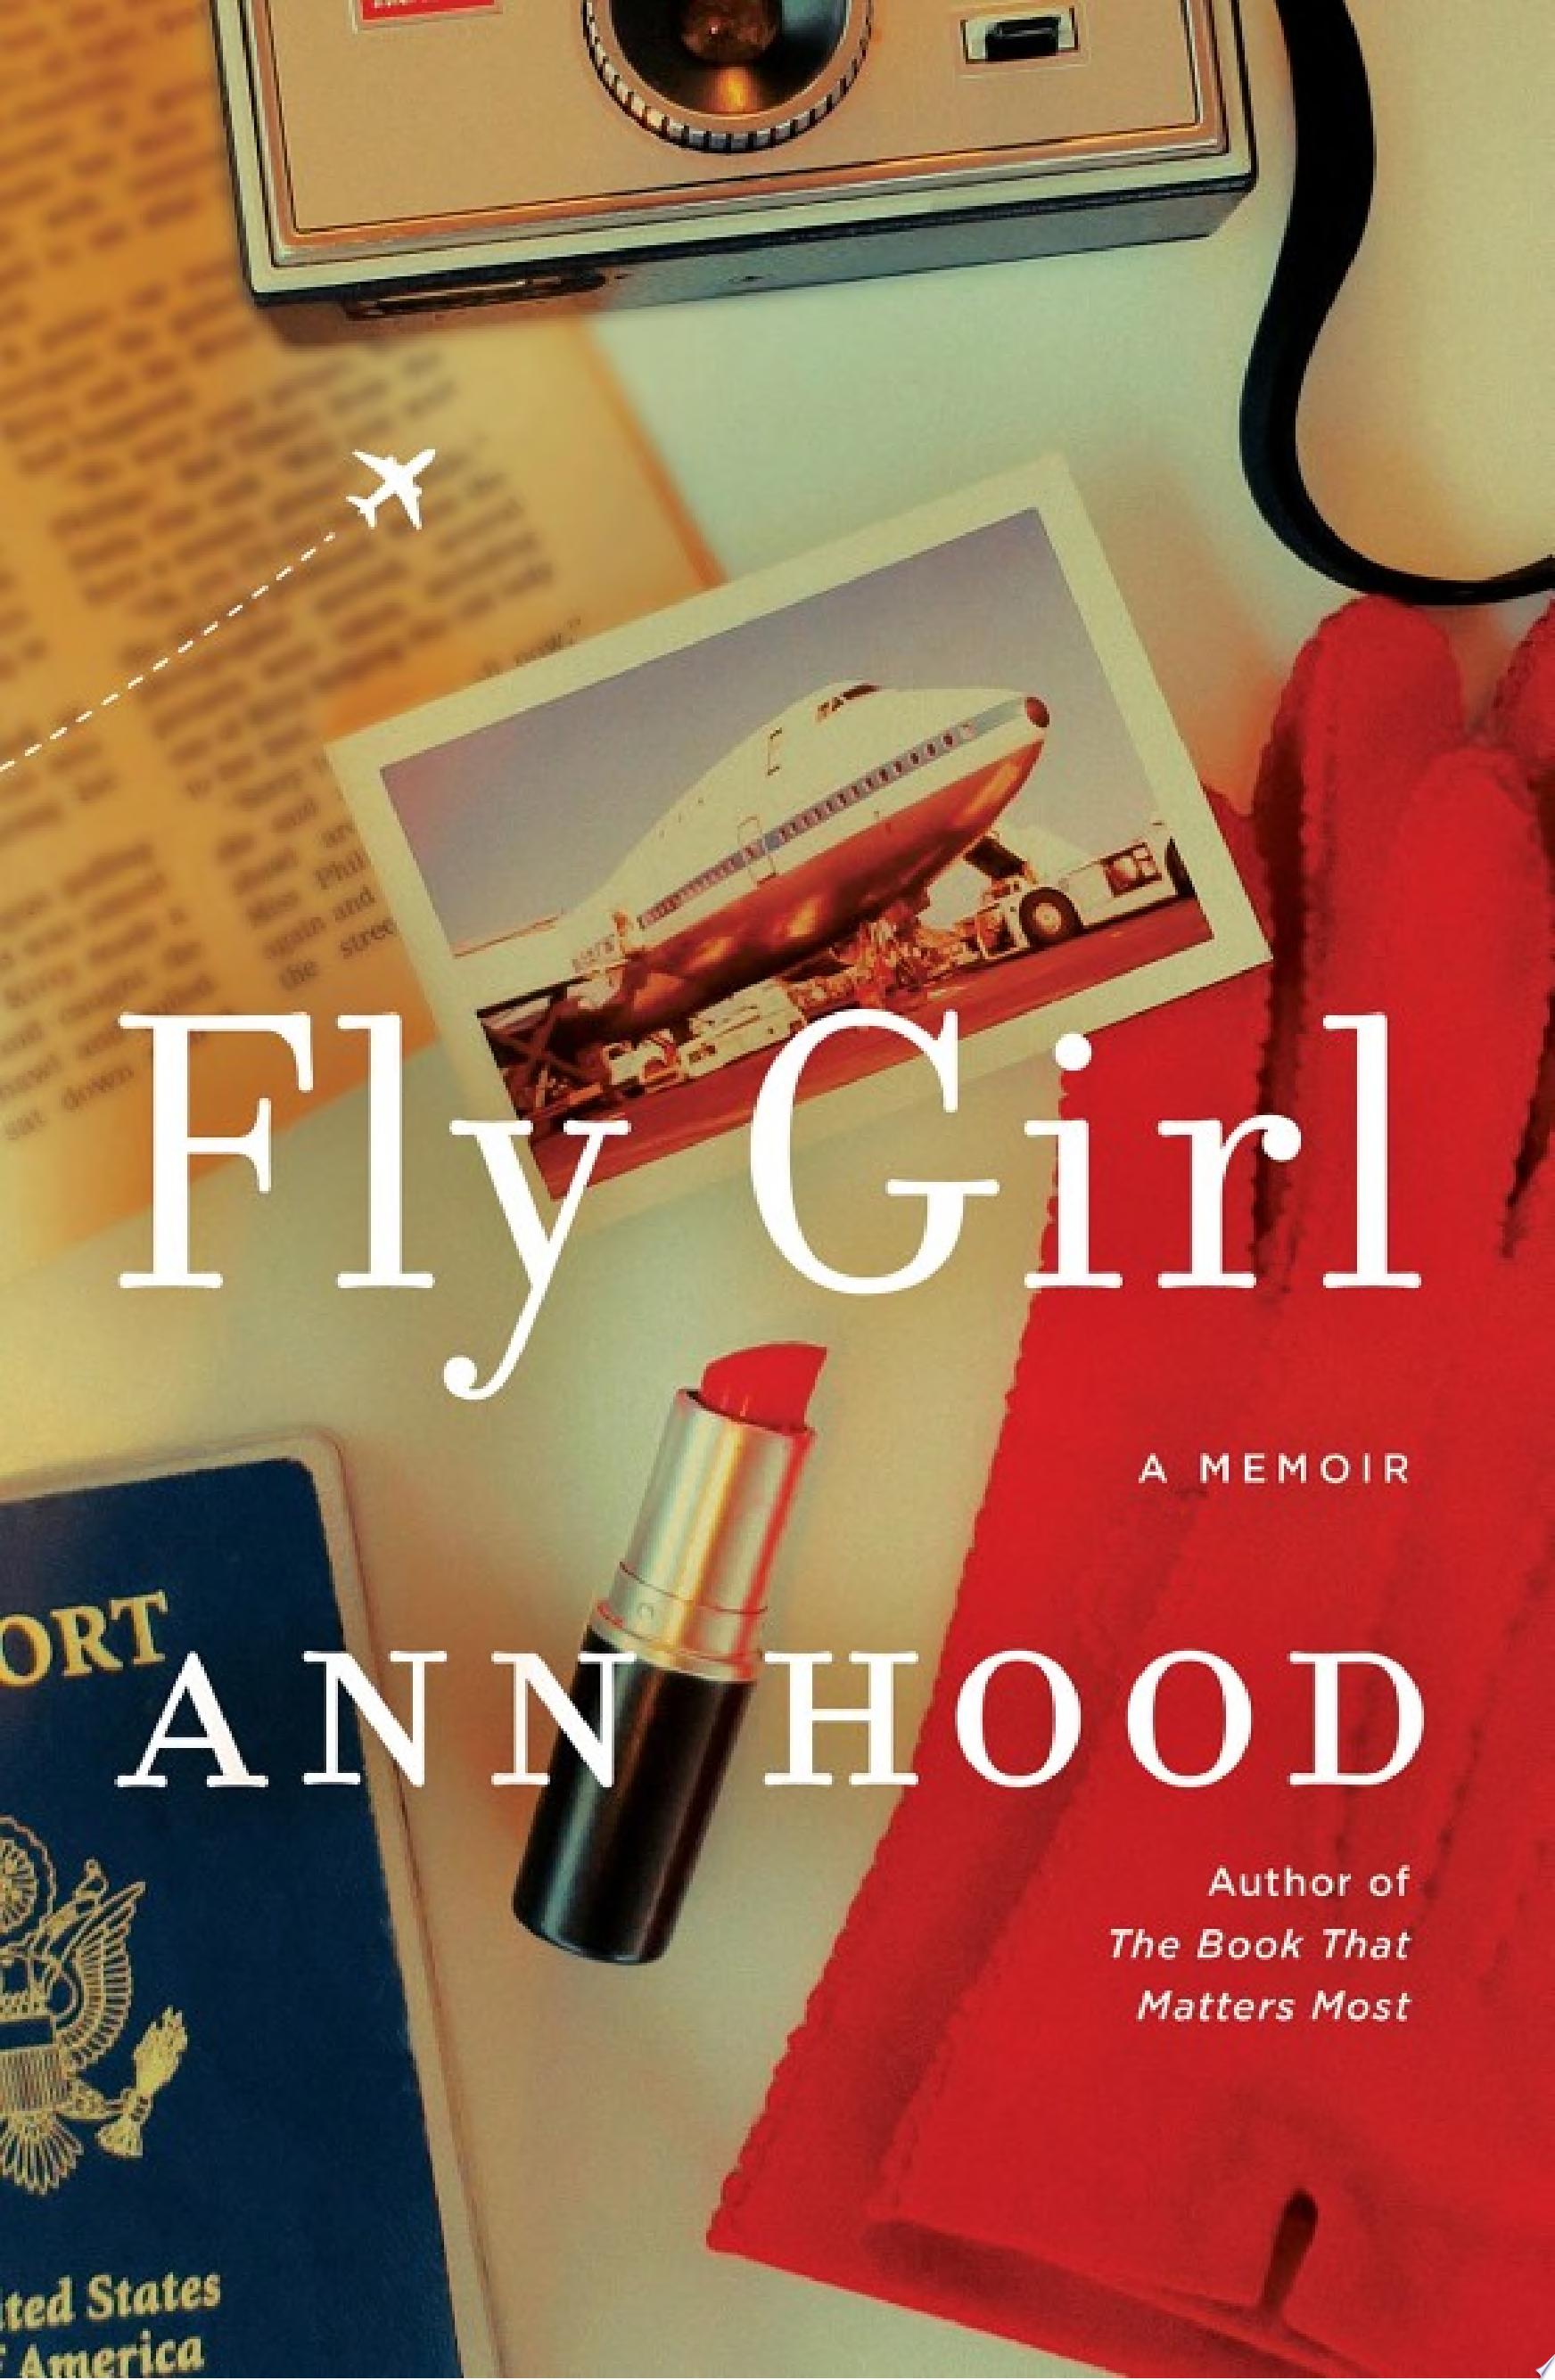 Image for "Fly Girl: A Memoir"